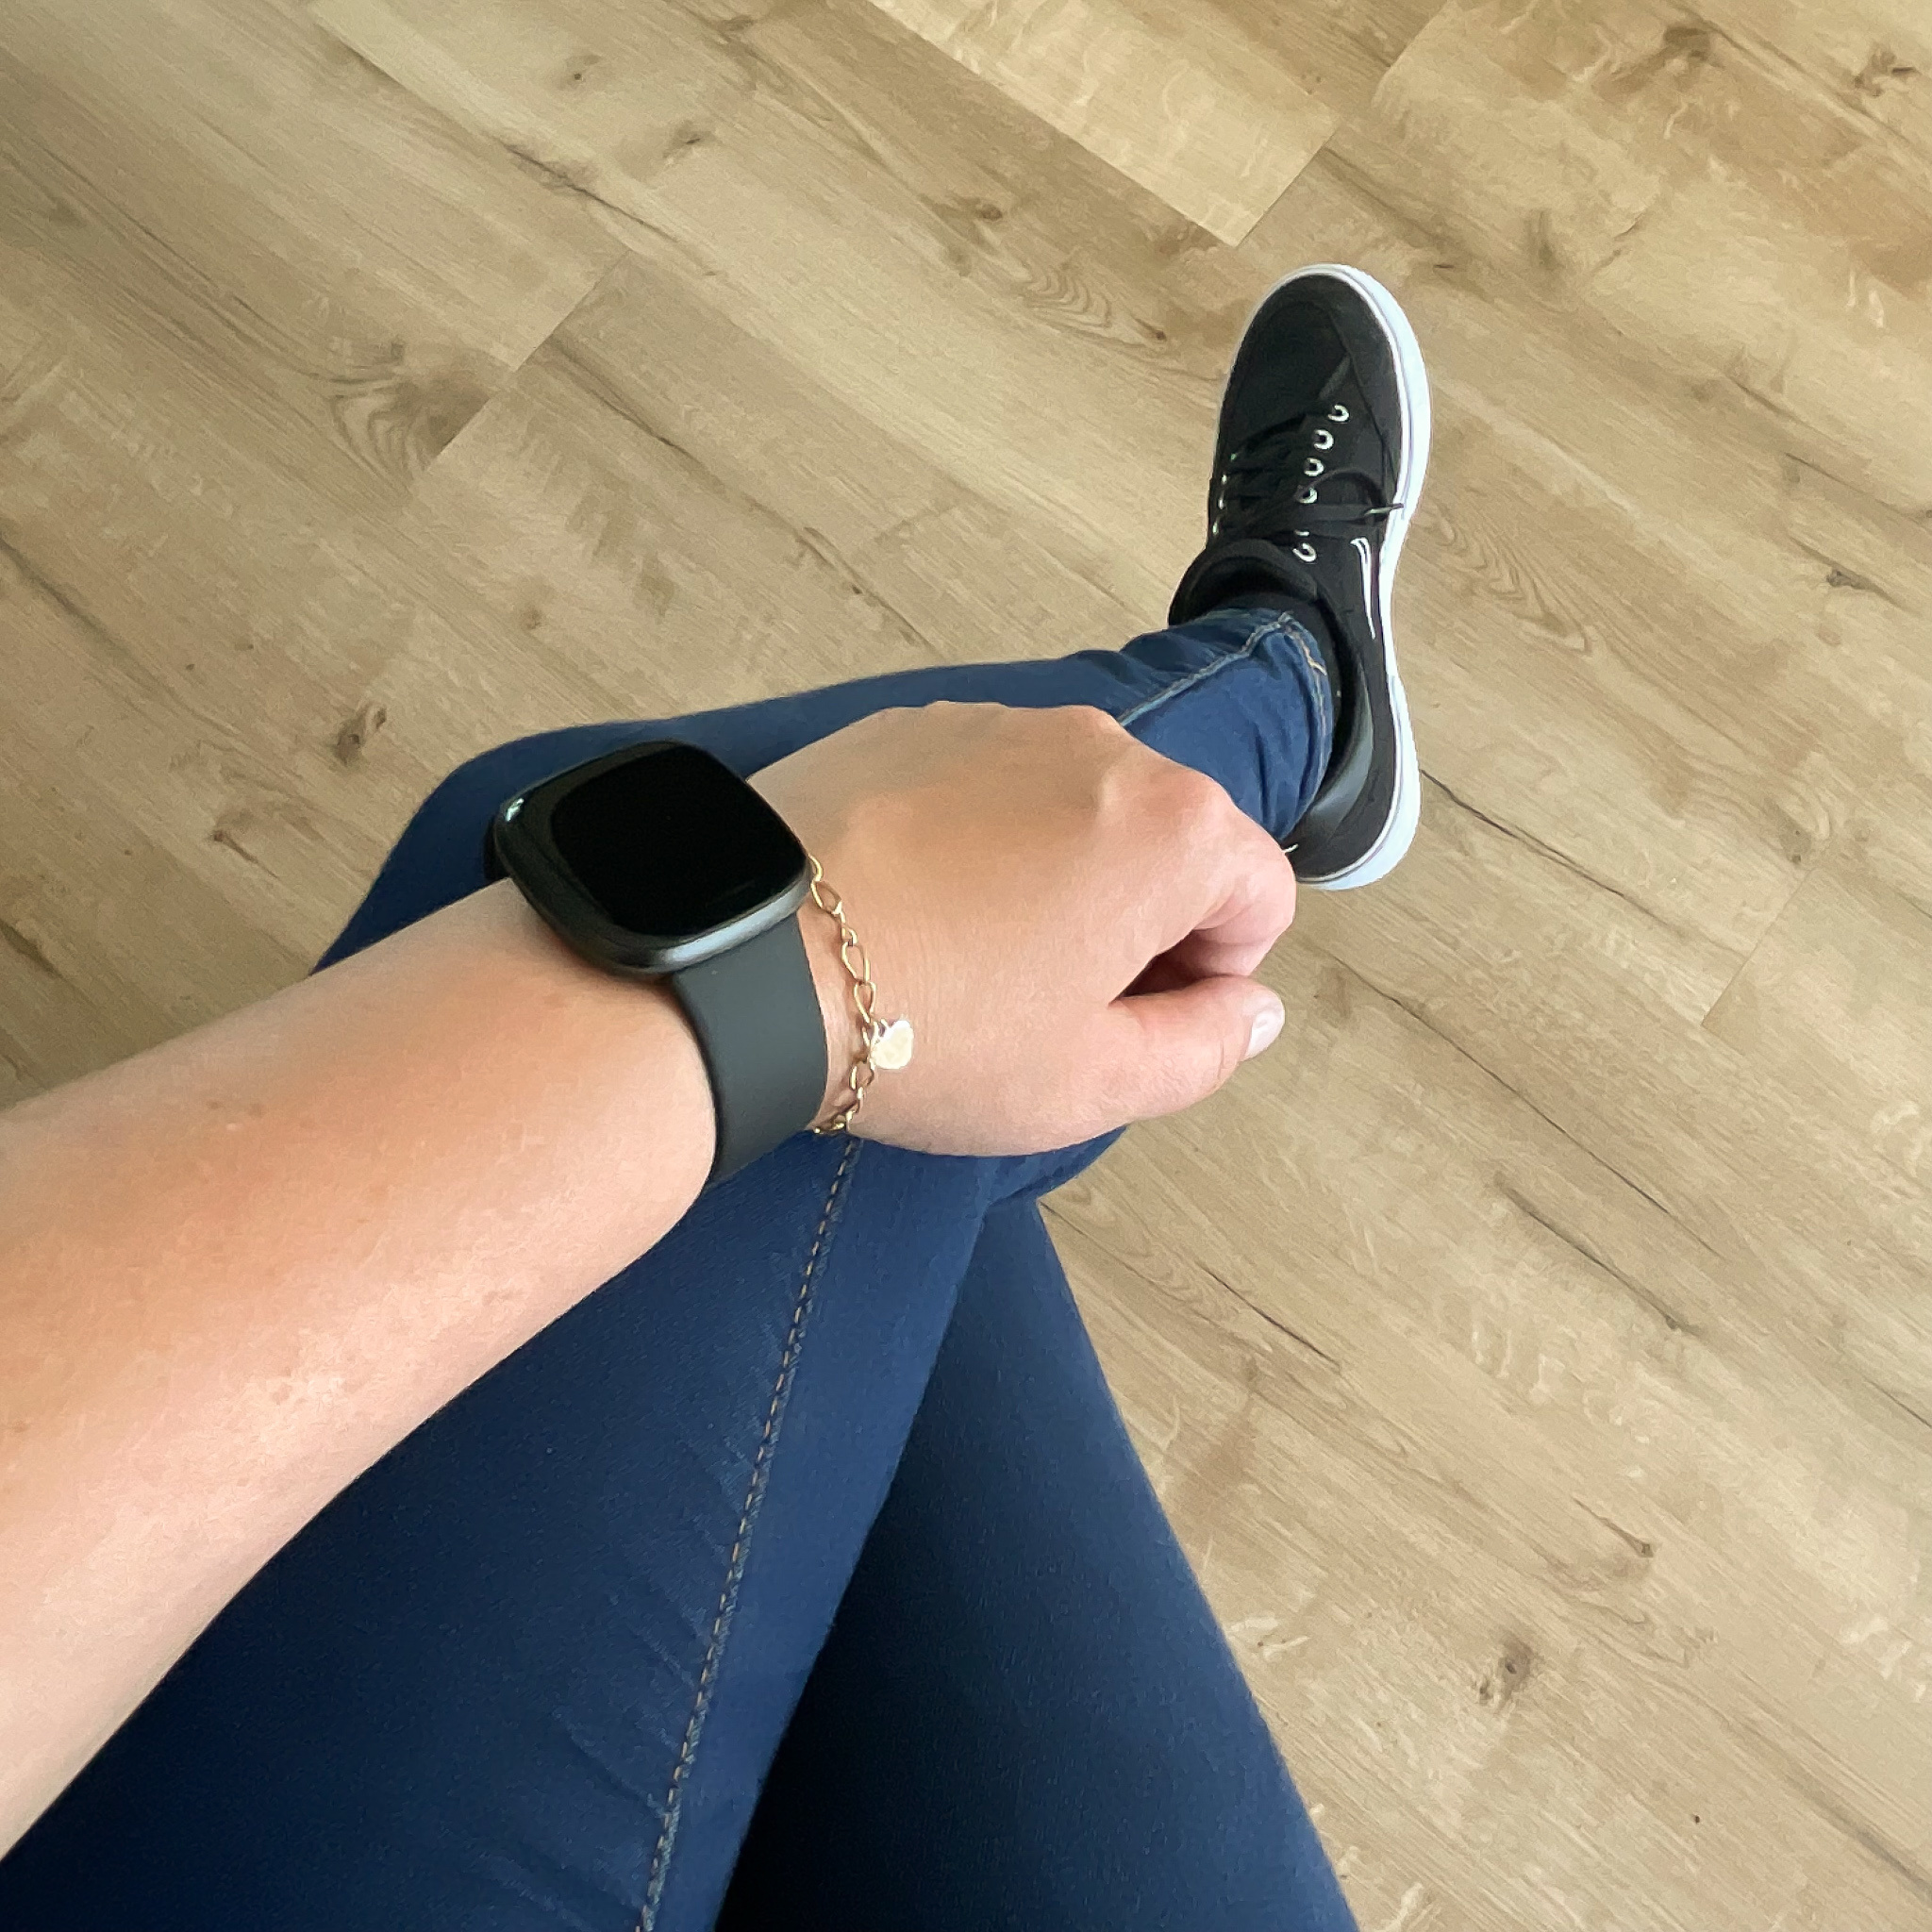 Fitbit Versa 3 / Sense sport band - zwart